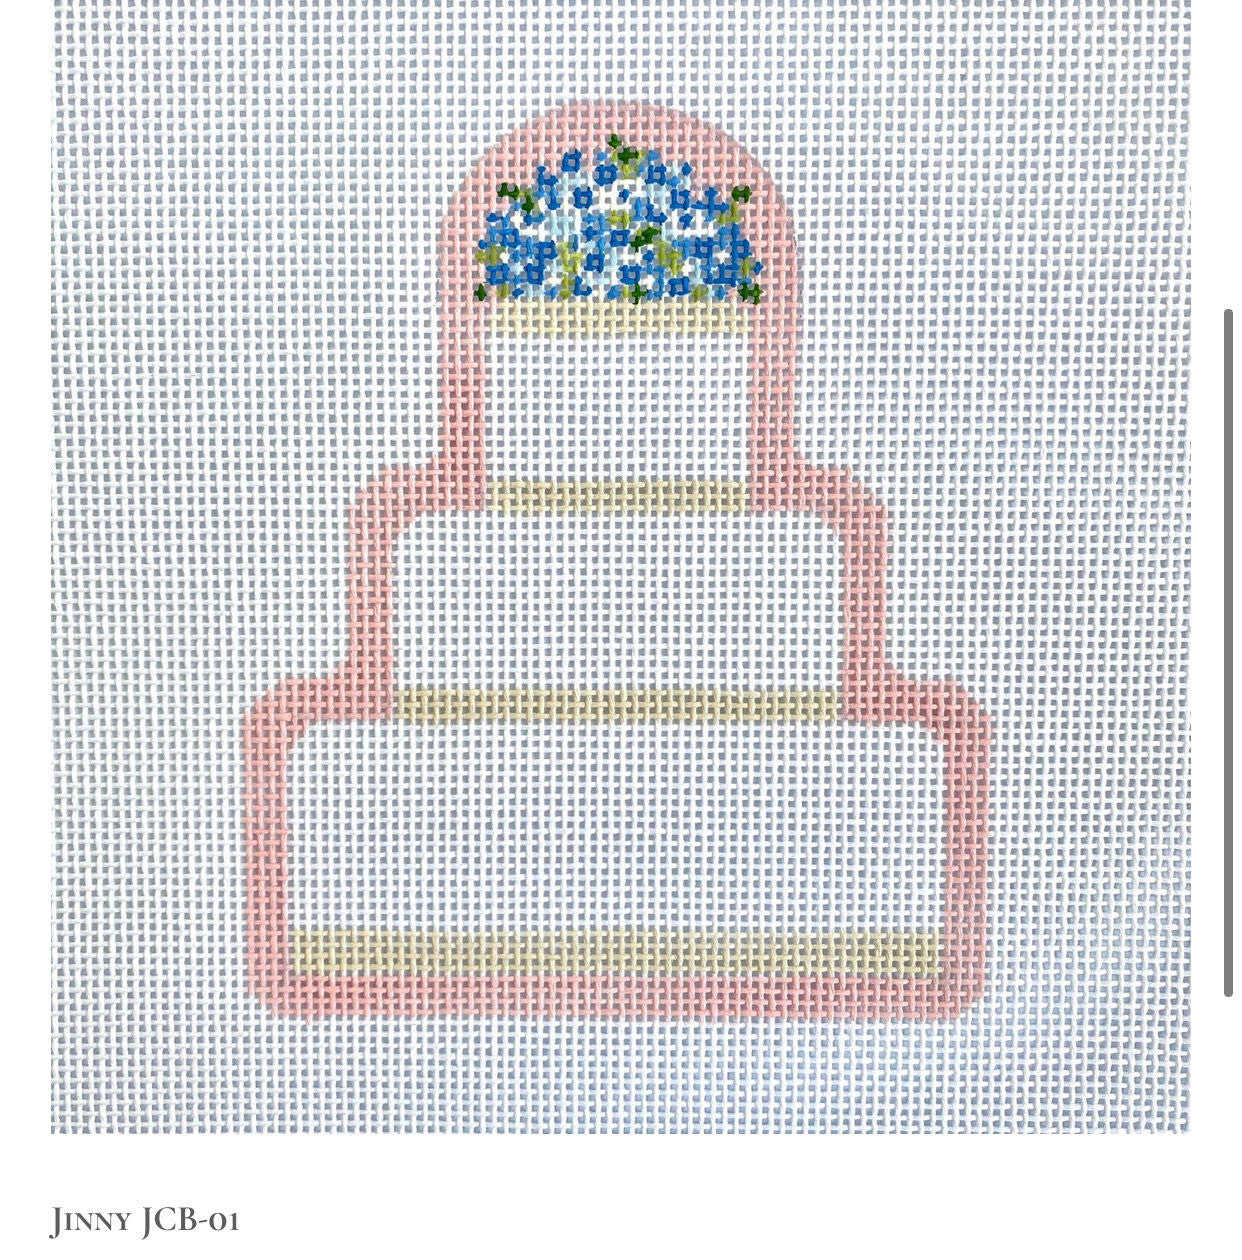 JCB Stitches Wedding Cake  Jinny JCB-02 Pink Border